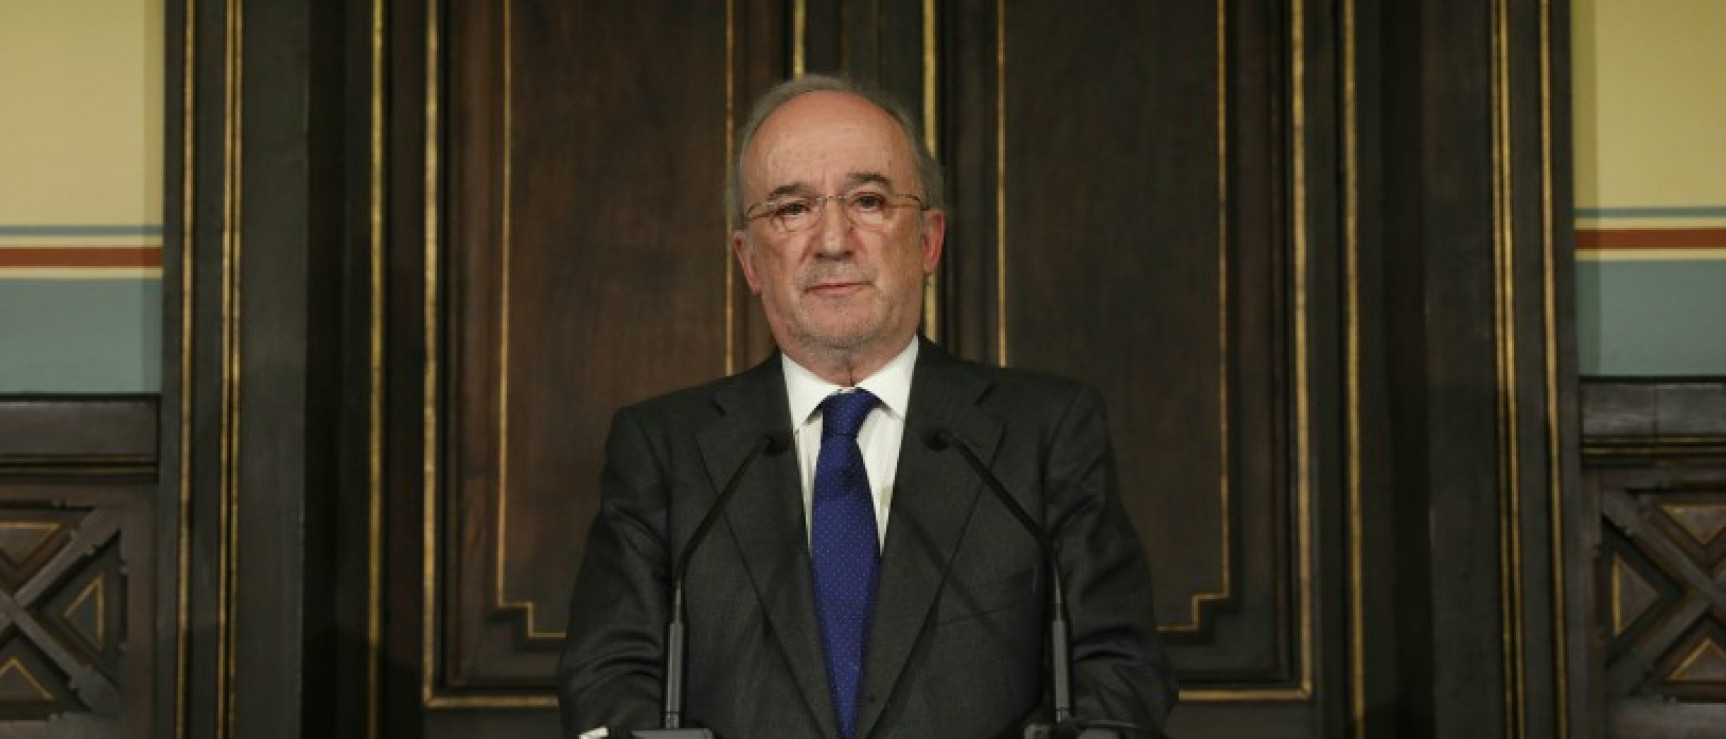 Santiago Muñoz Machado durante la rueda de prensa tras ser nombrado director.